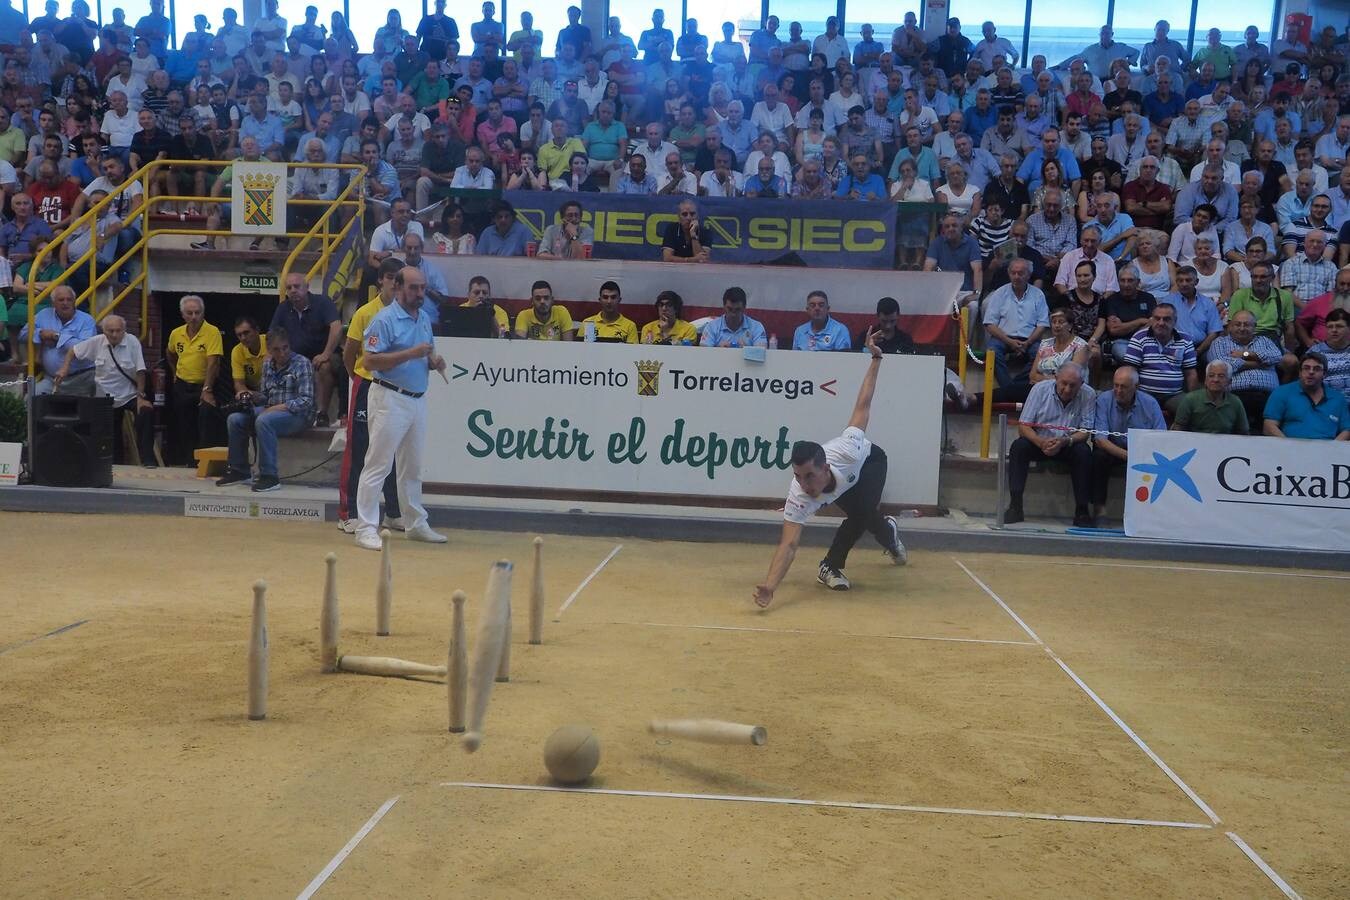 Su gran rival, Jesús Salmón, tuvo que conformarse con la segunda plaza, justo por delante de Víctor González, que cerró el podio en Torrelavega